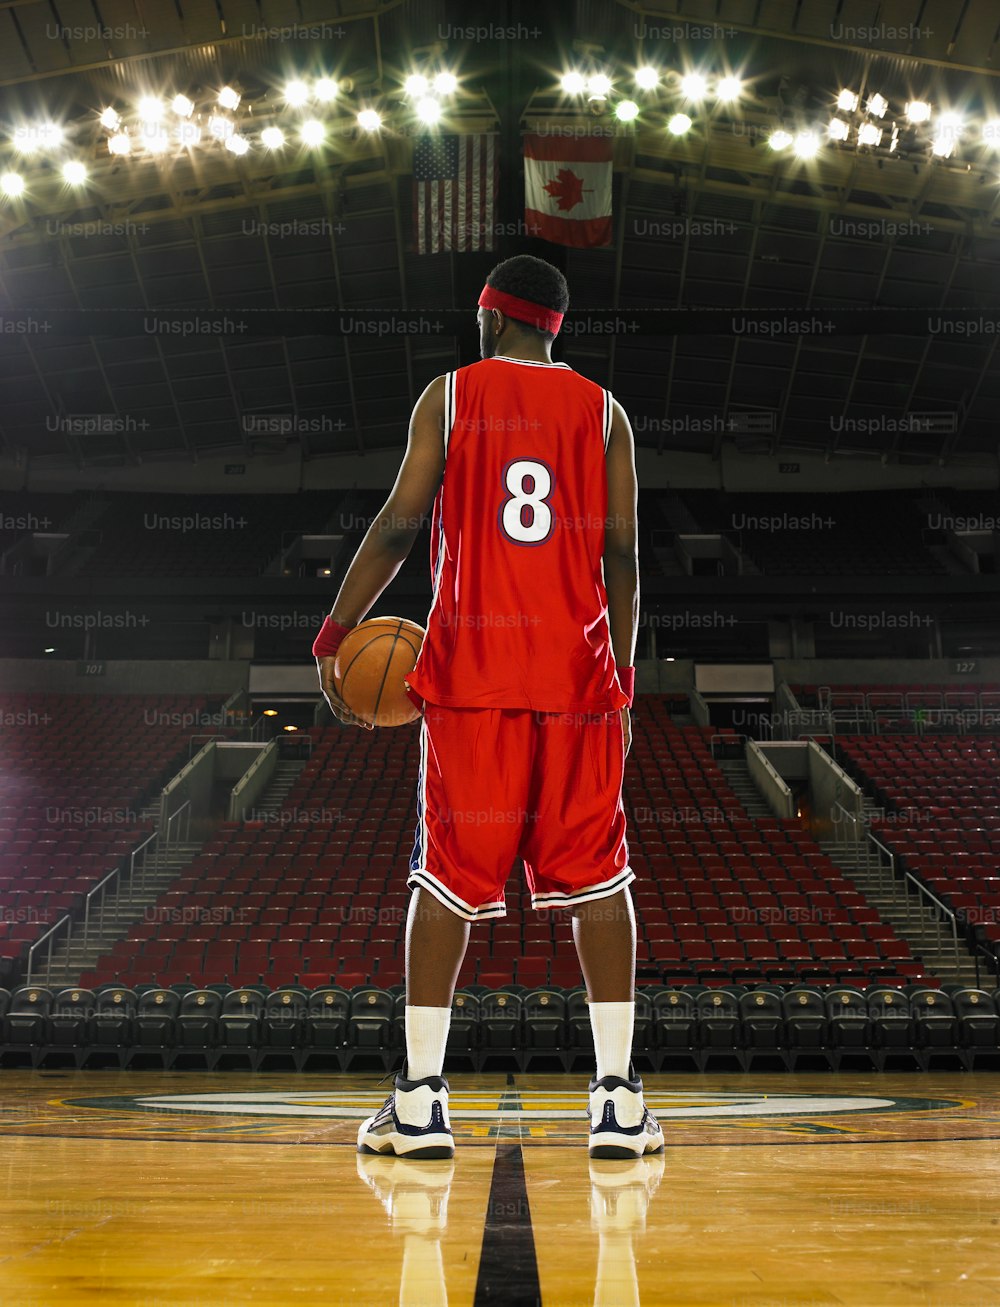 Un giocatore di basket in uniforme rossa che tiene un pallone da basket